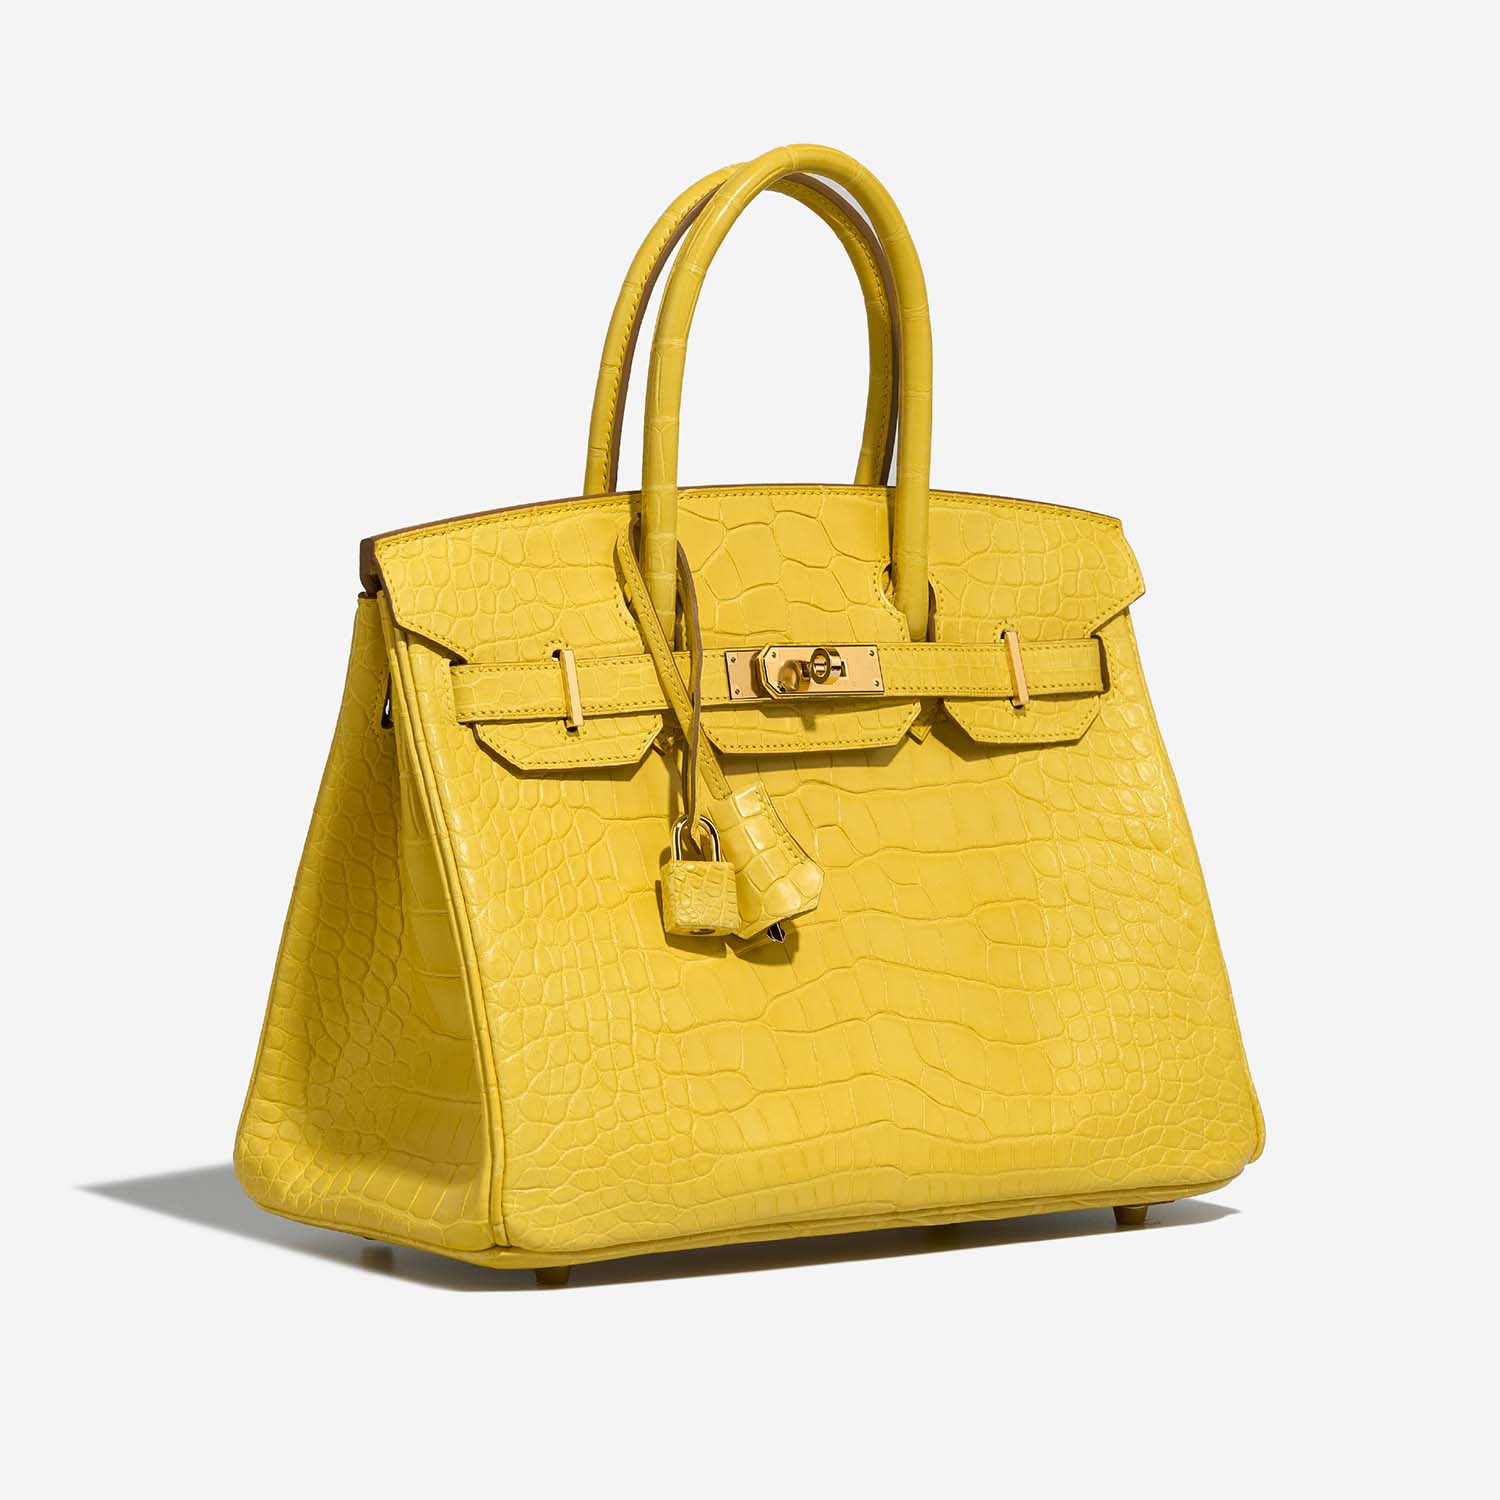 Hermès Birkin 30 Mimosa Side Front | Verkaufen Sie Ihre Designer-Tasche auf Saclab.com